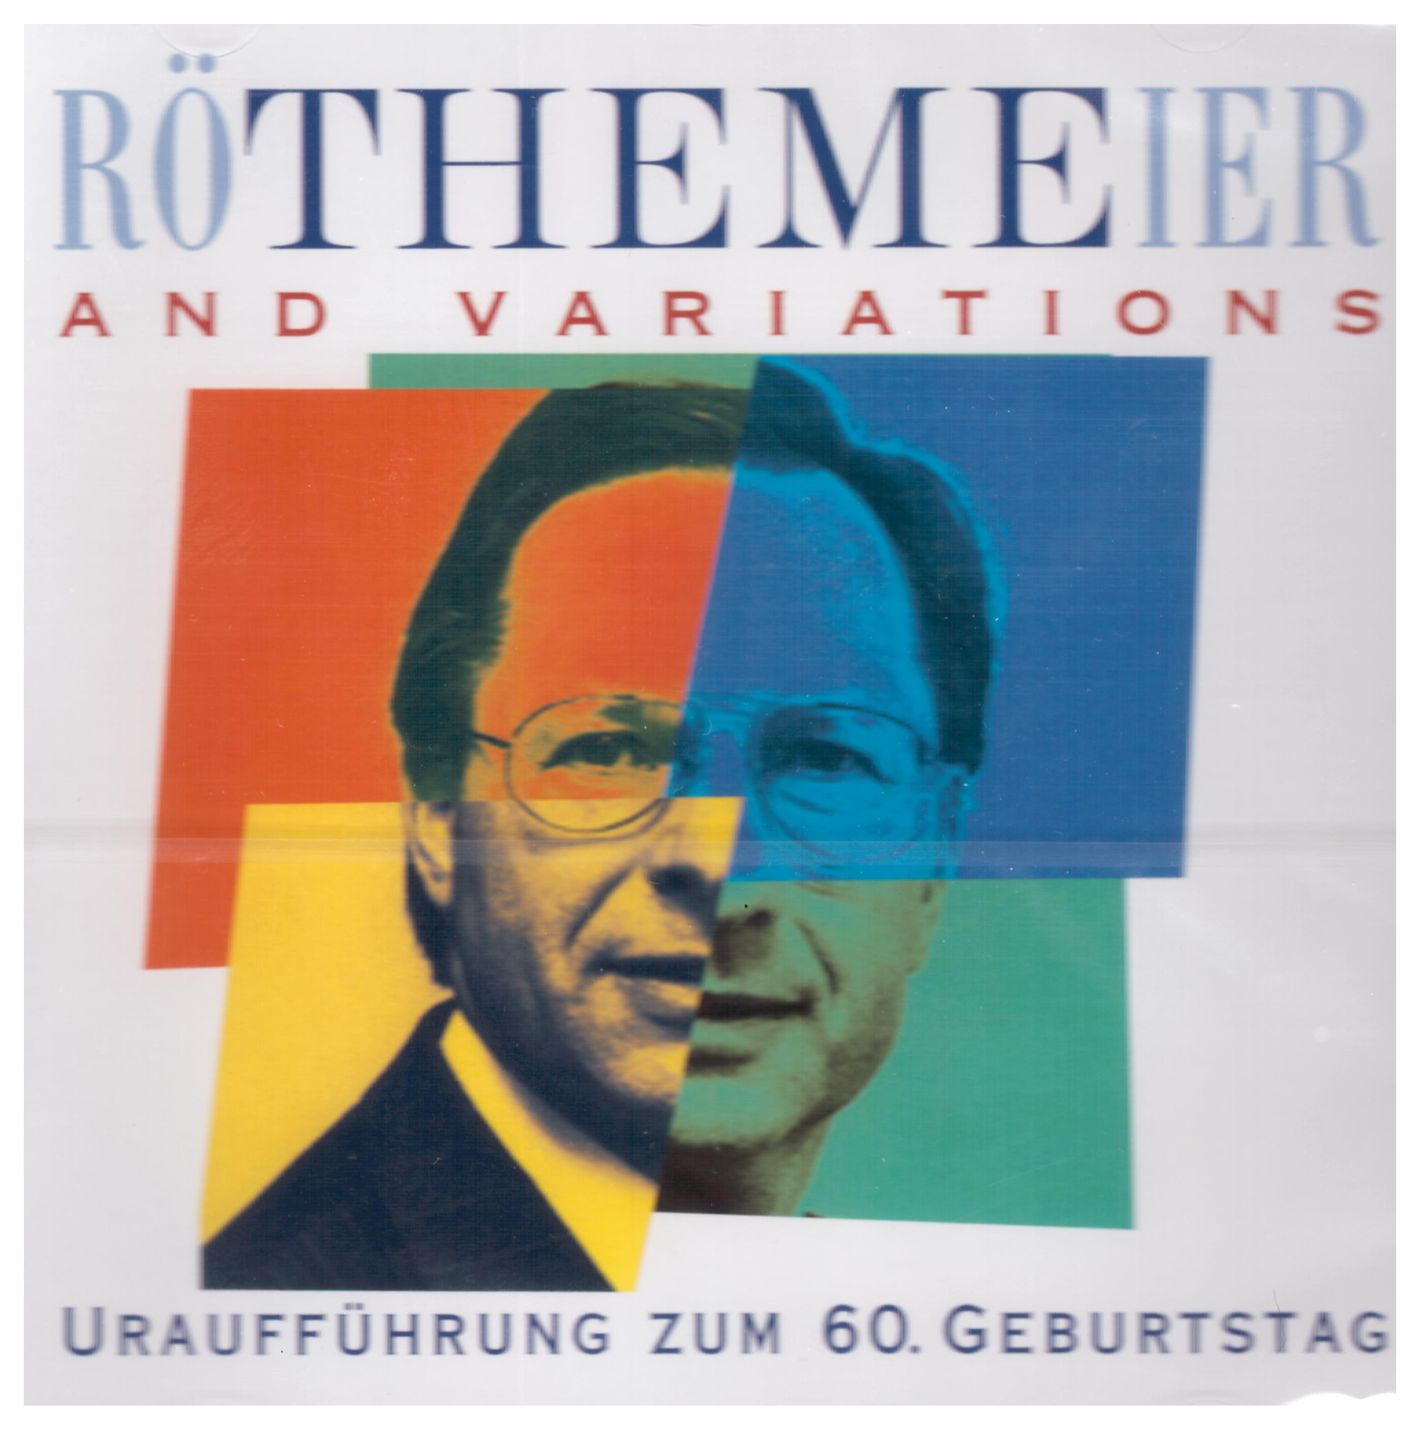 RöTHEMEier and Variations